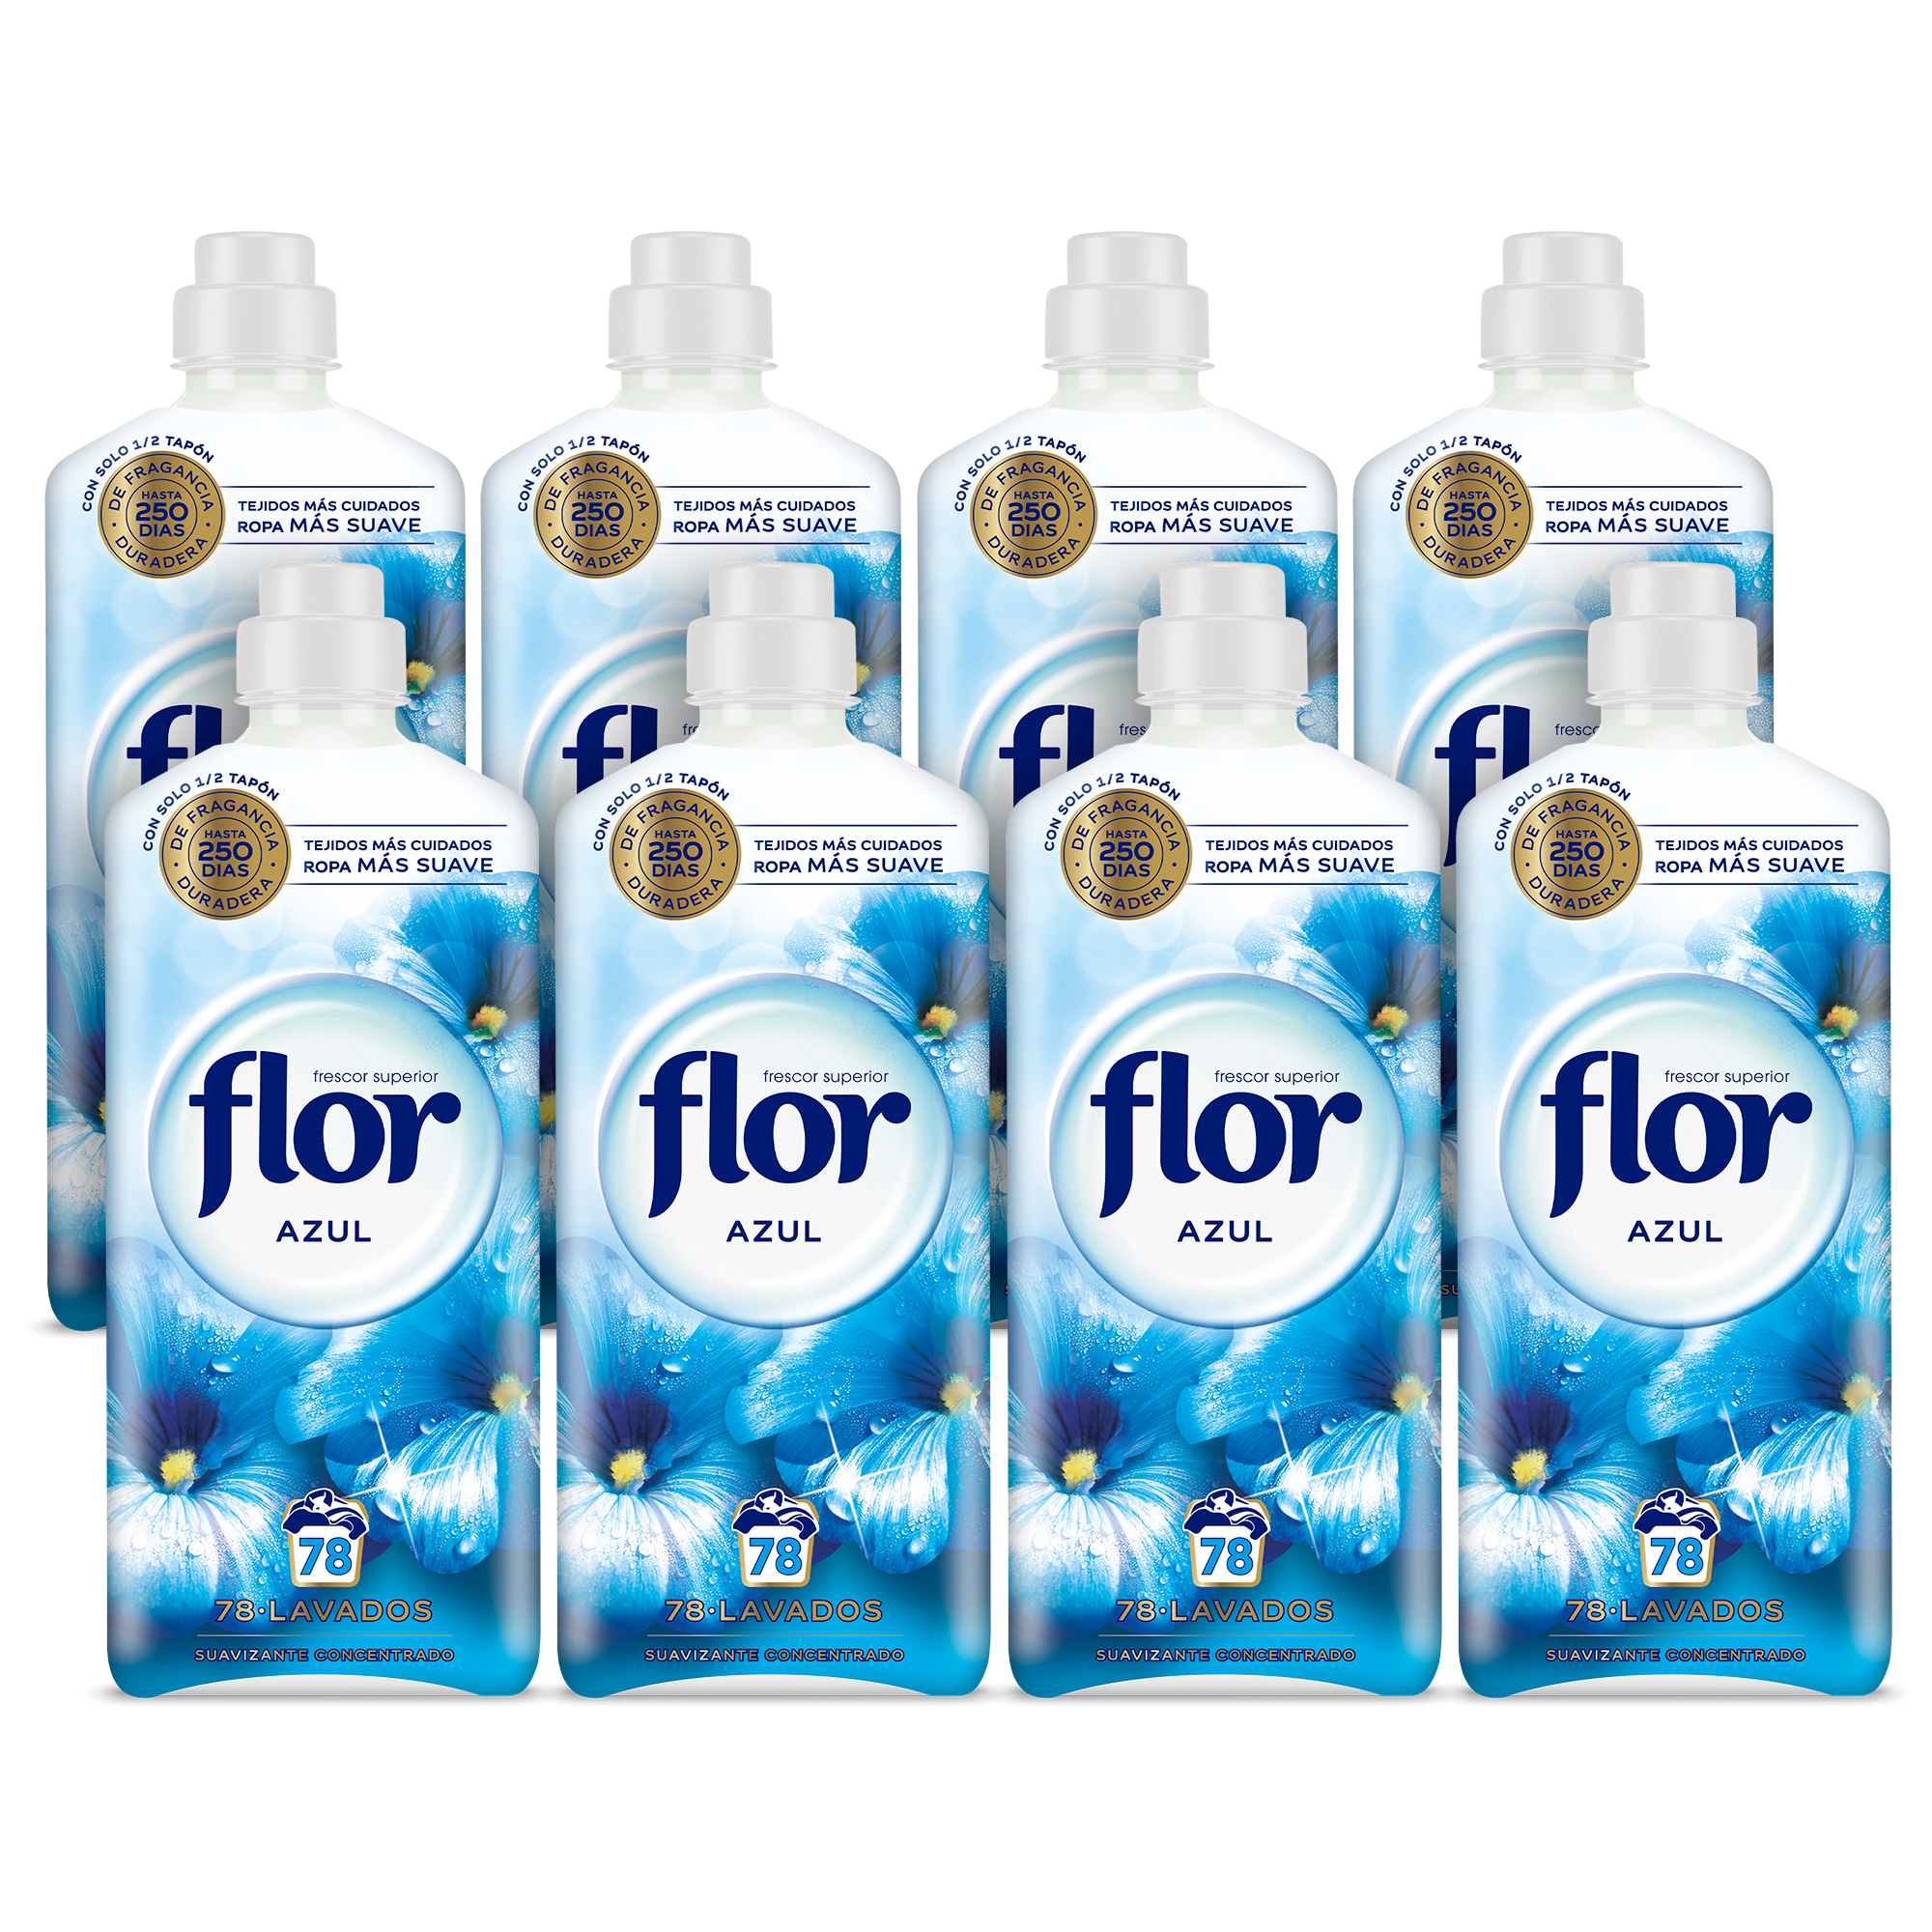 Flor - Flor Azul Suavizante Concentrado para la ropa 624 lavados (8 botellas de 78 lavados)